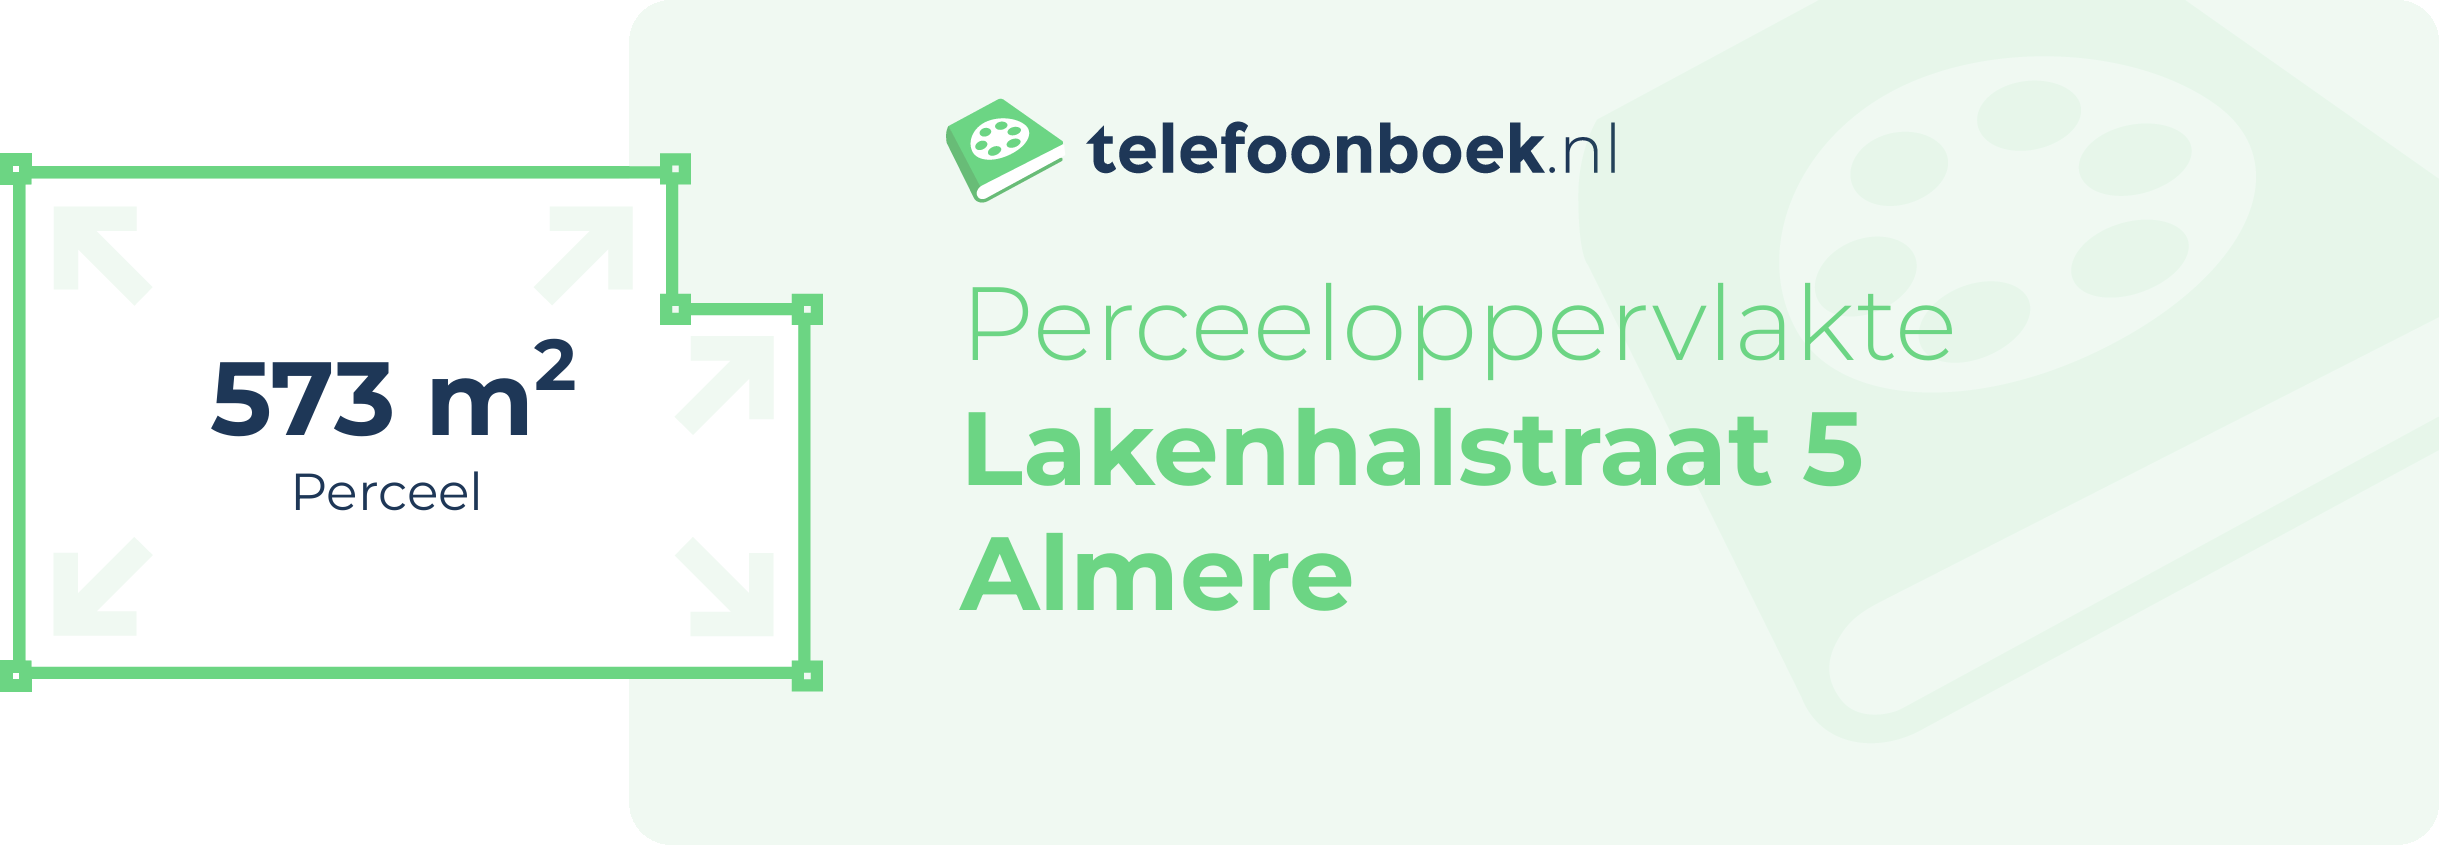 Perceeloppervlakte Lakenhalstraat 5 Almere